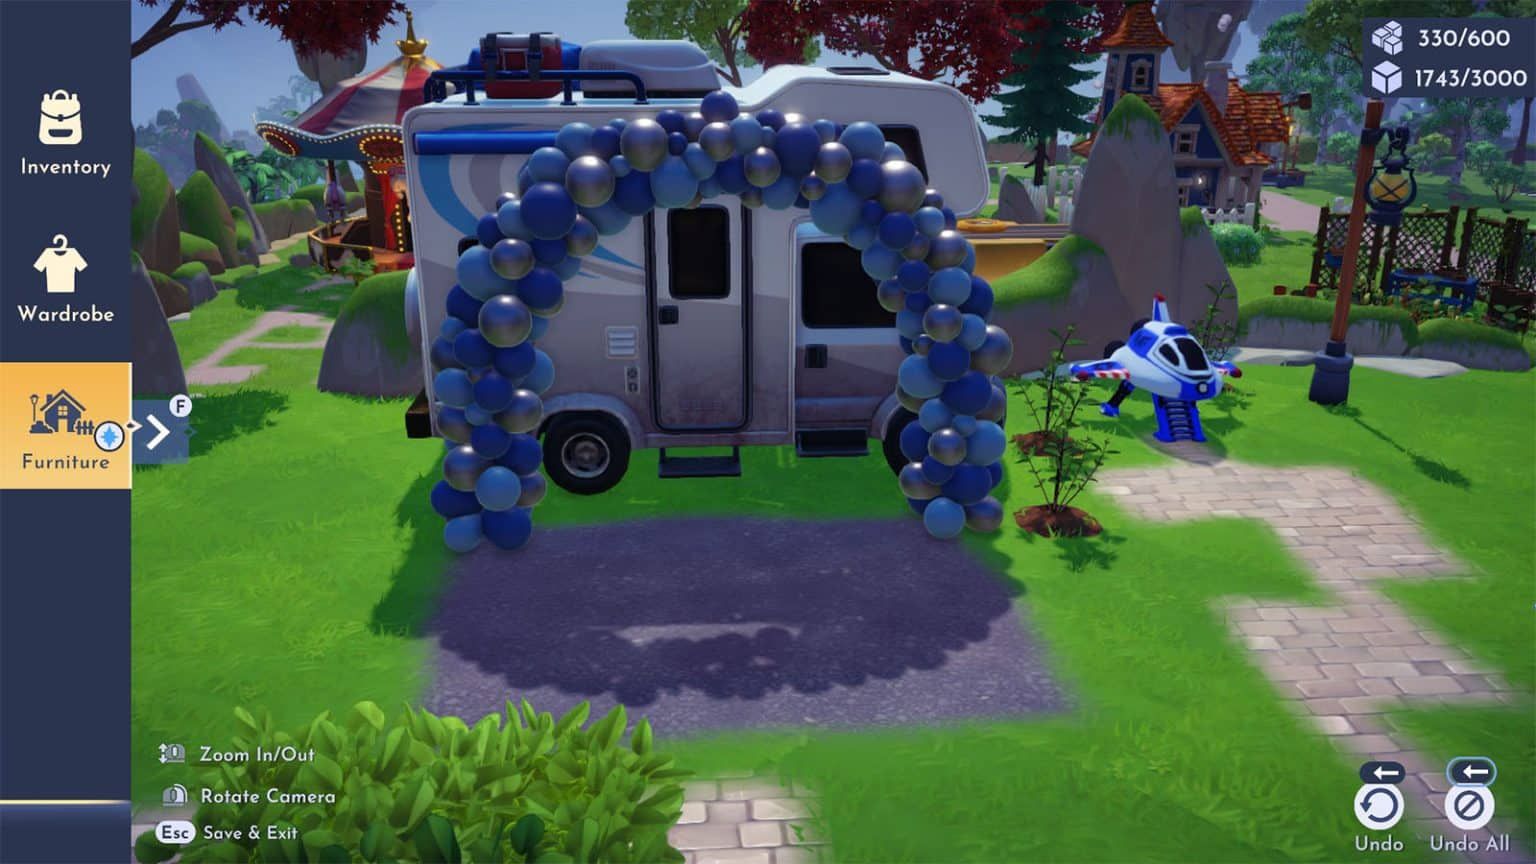 L'interface utilisateur de Disney Dreamlight Valley a placé de l'asphalte et une arche de ballon près du camping-car de Buzz pour 